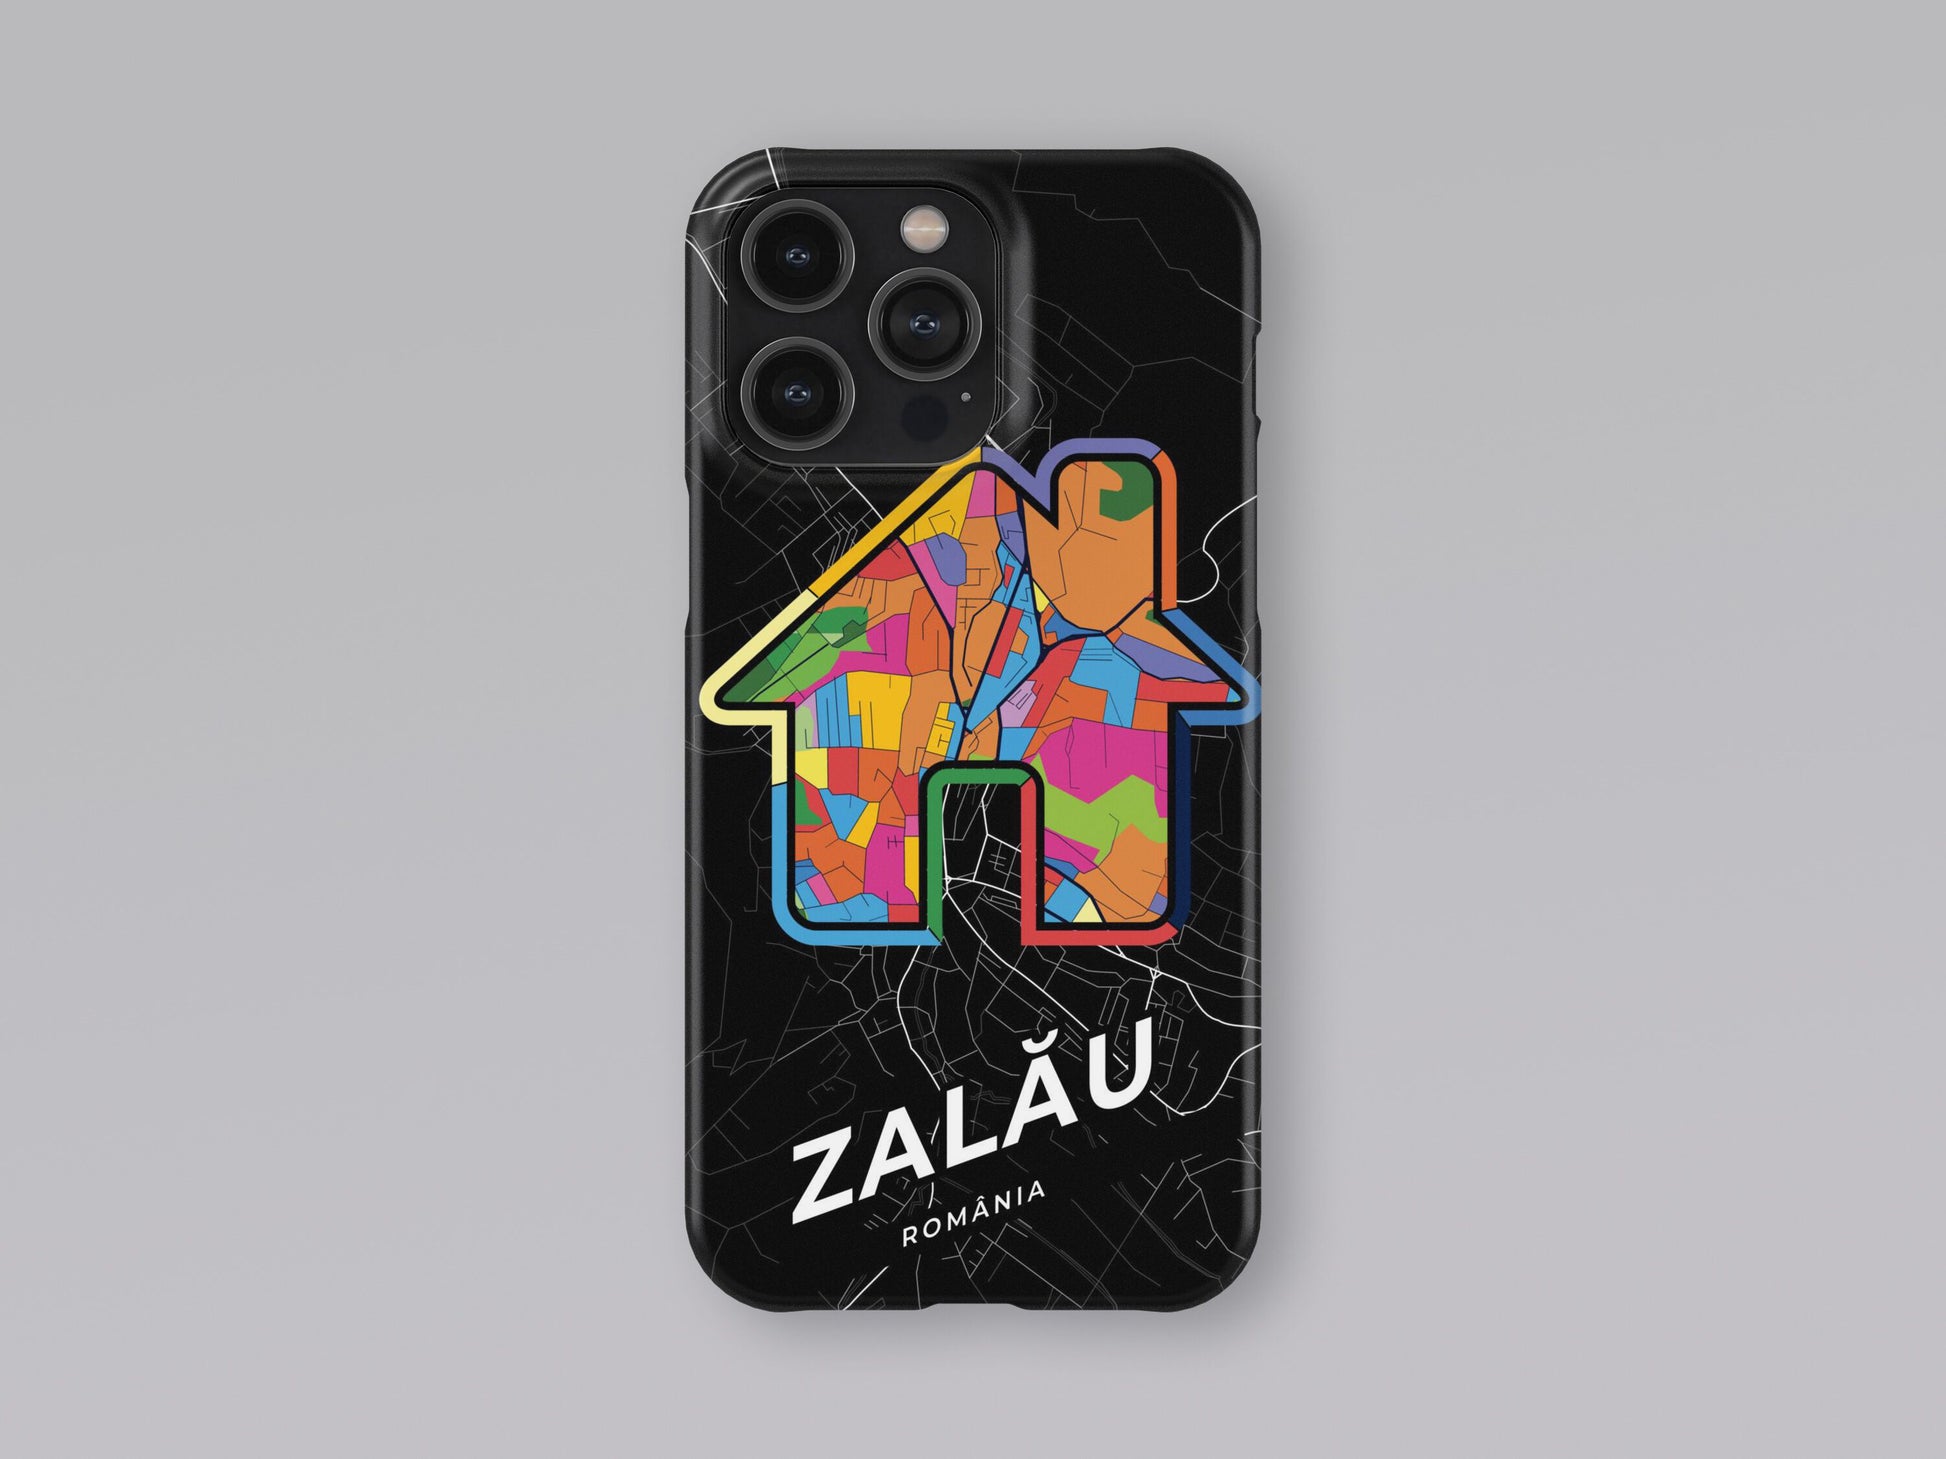 Zalău Romania slim phone case with colorful icon 3